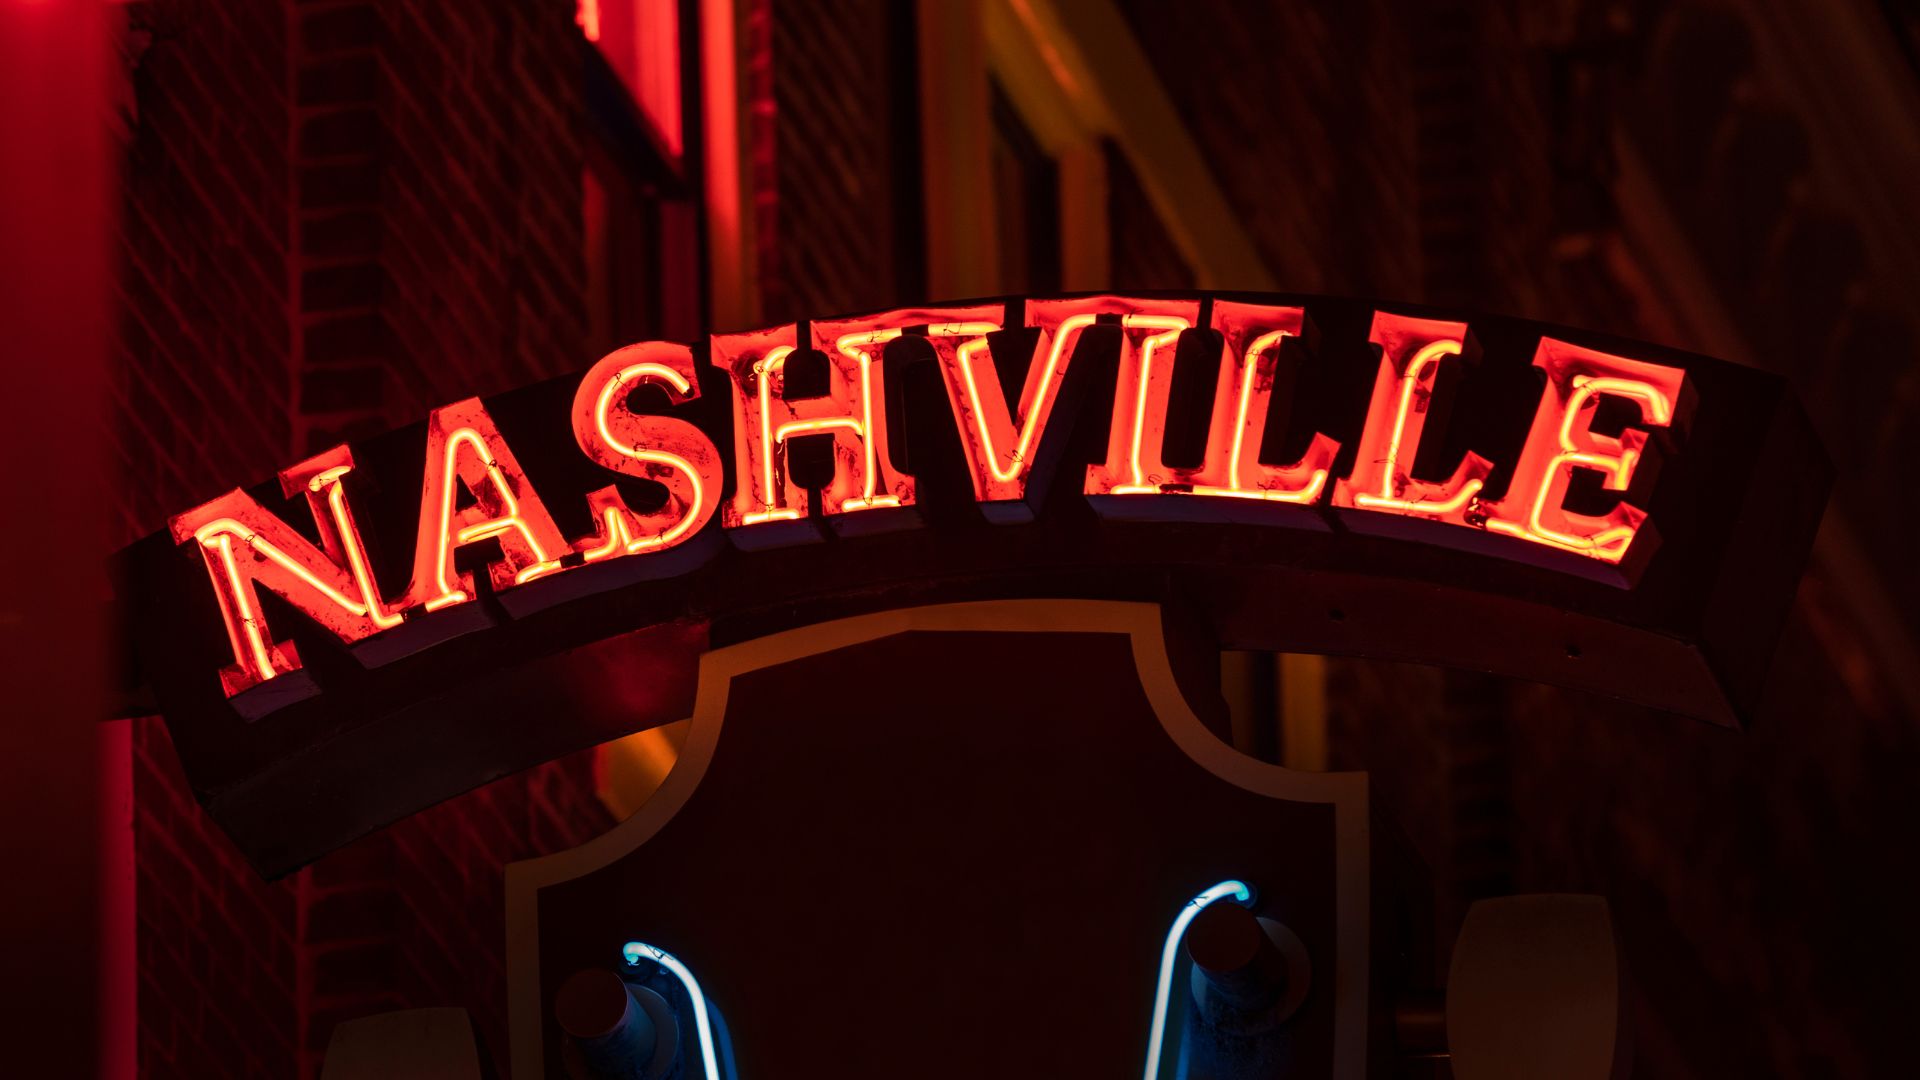 Ryan Sims Shares Fun Facts About Nashville on TikTok